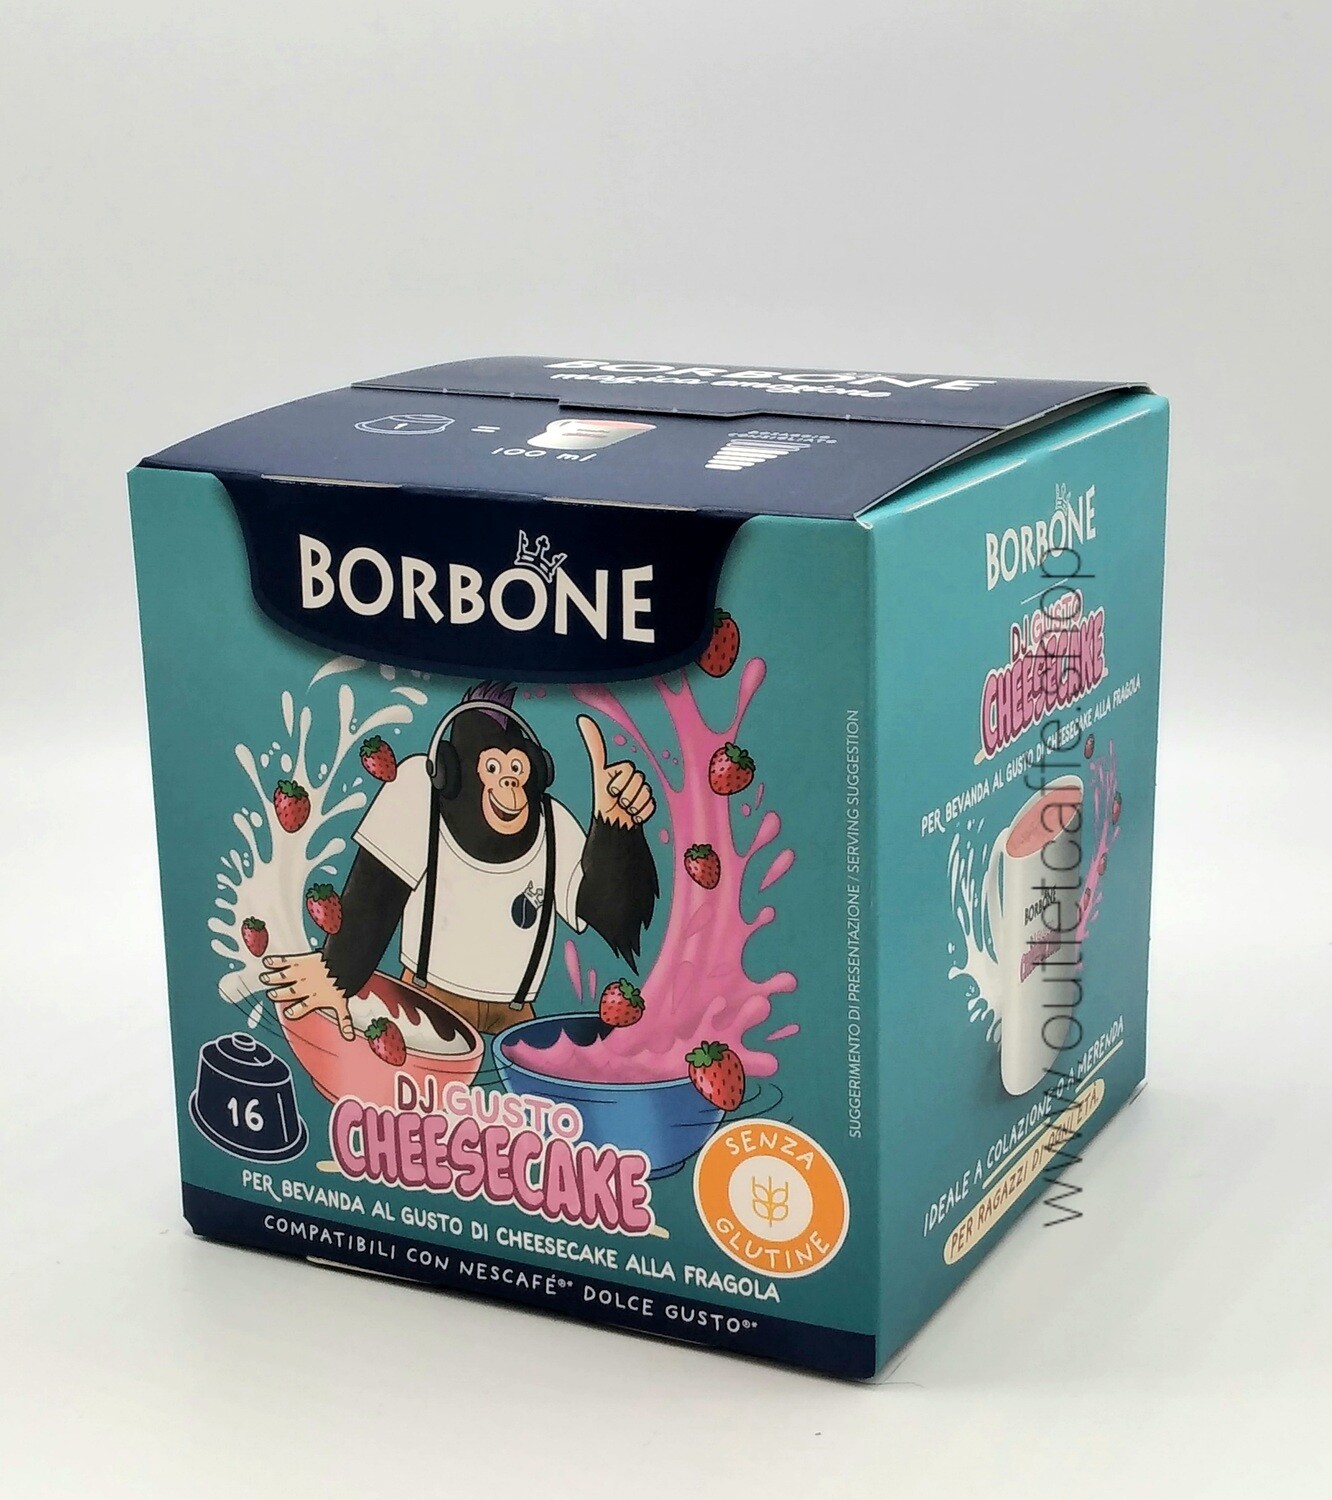 Sambucone Borbone Capsule compatibili NESCAFE' DOLCE GUSTO